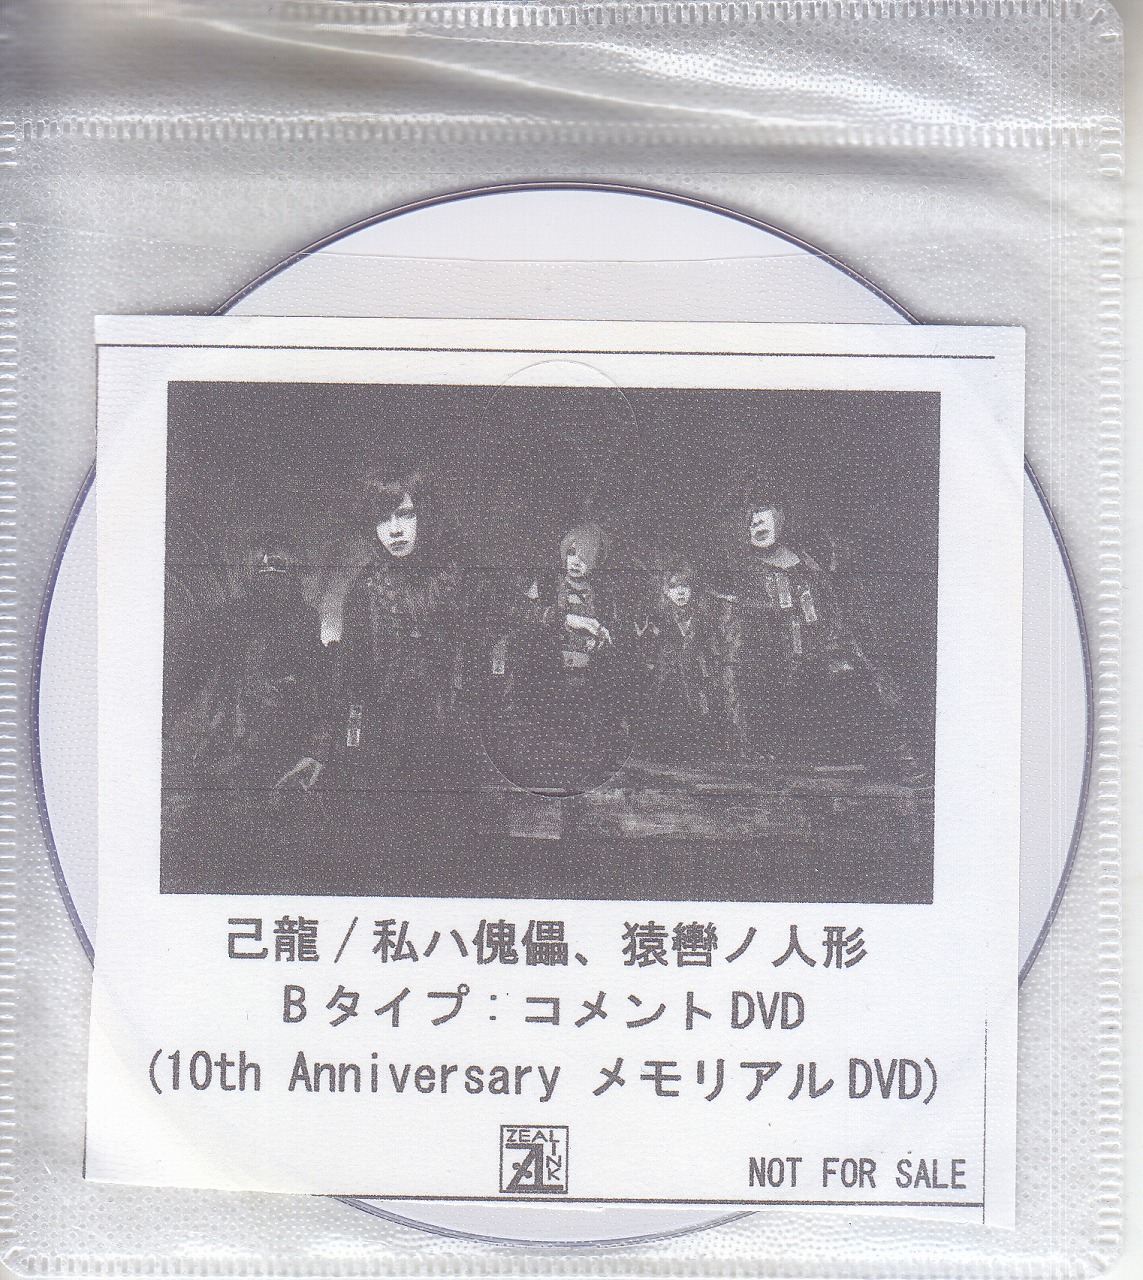 己龍 ( キリュウ )  の DVD 【ZEAL LINK】私ハ傀儡、猿轡ノ人形 Bタイプ:コメントDVD(10th AnniversaryメモリアルDVD)